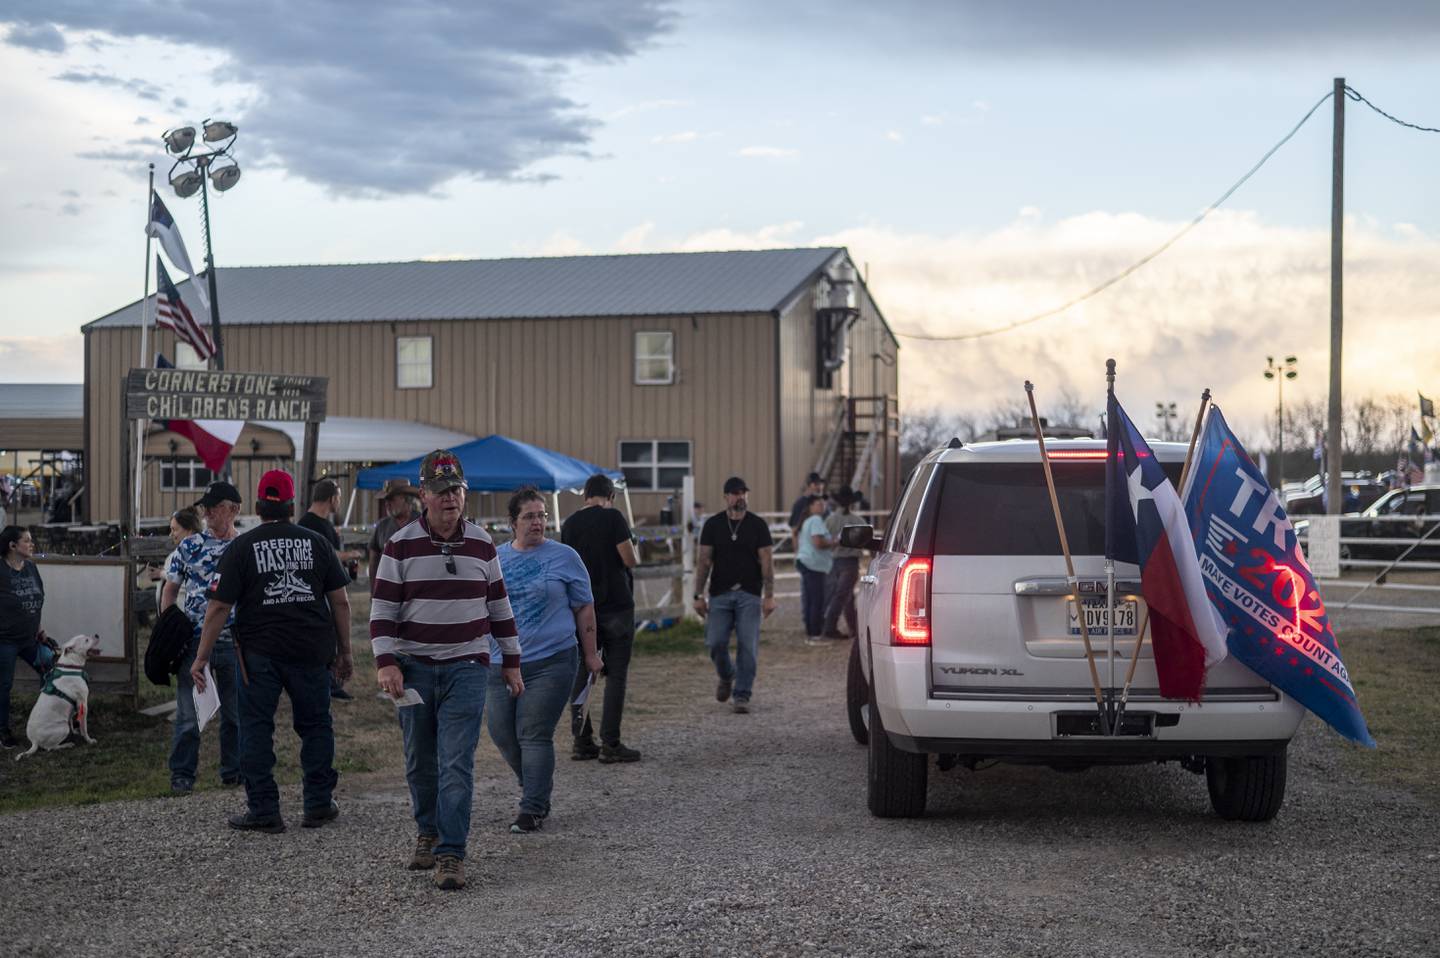 Los participantes en el convoy 'Take Our Border Back' (recuperar nuestra frontera) llegan a Cornerstone Childrens Ranch cerca de Quemado, oponiéndose a la inmigración ilegal.